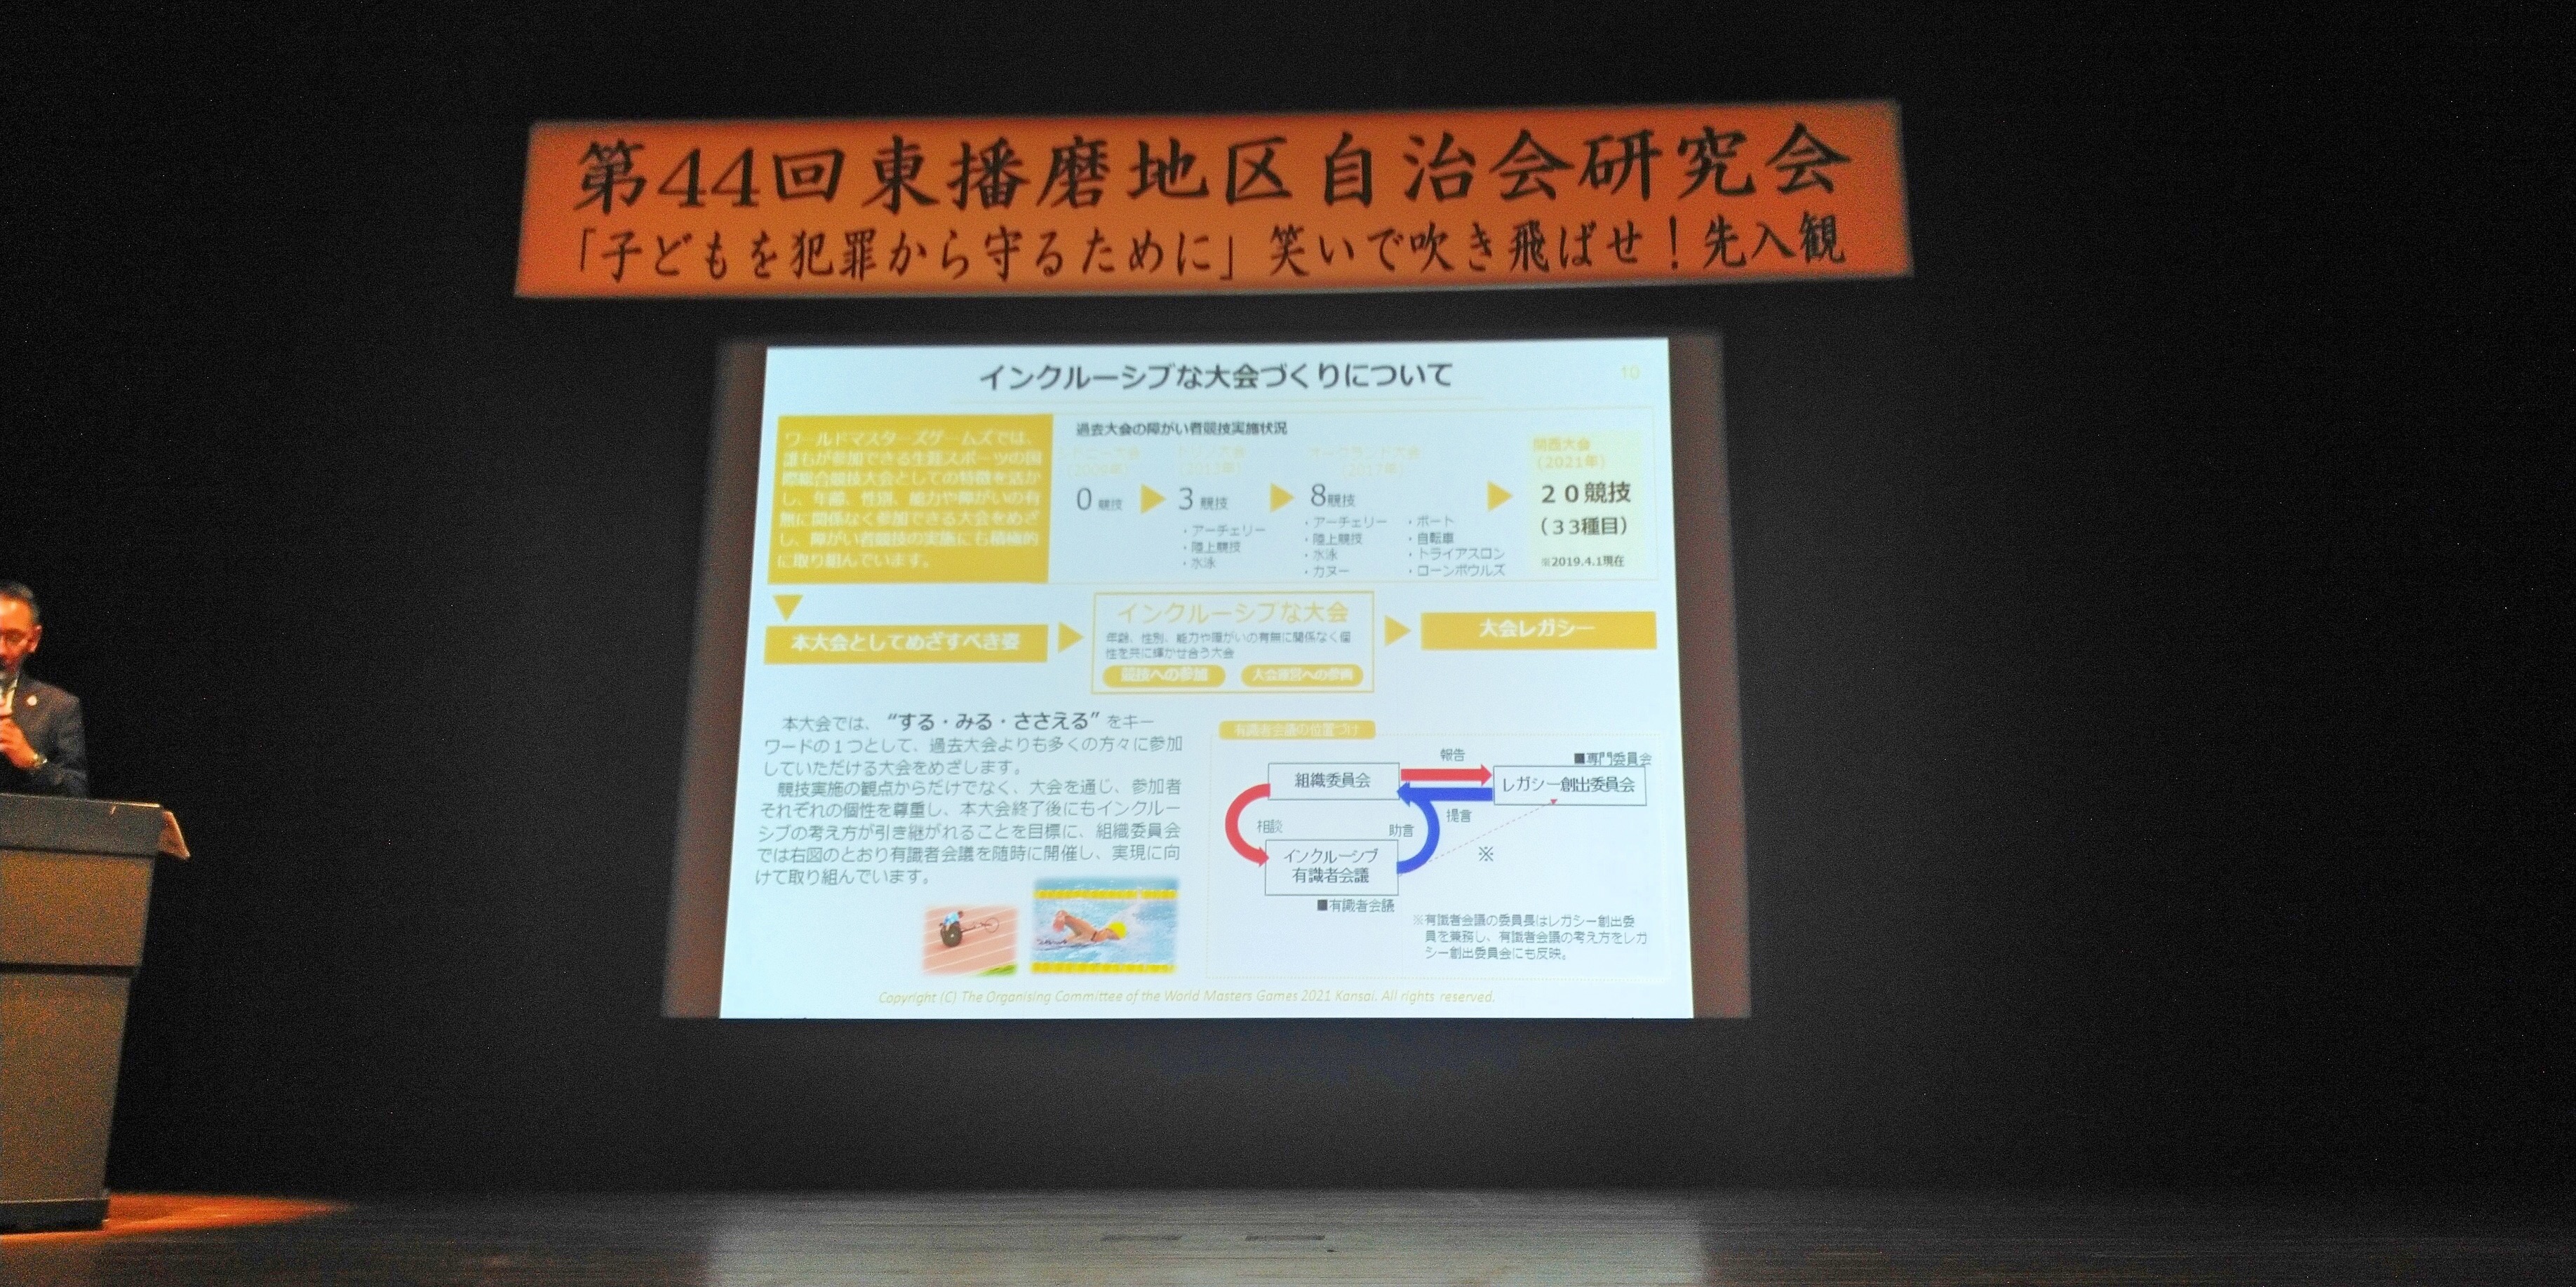 2019年11月8日(金) 第４４回東播磨地区自治会研究会に出席